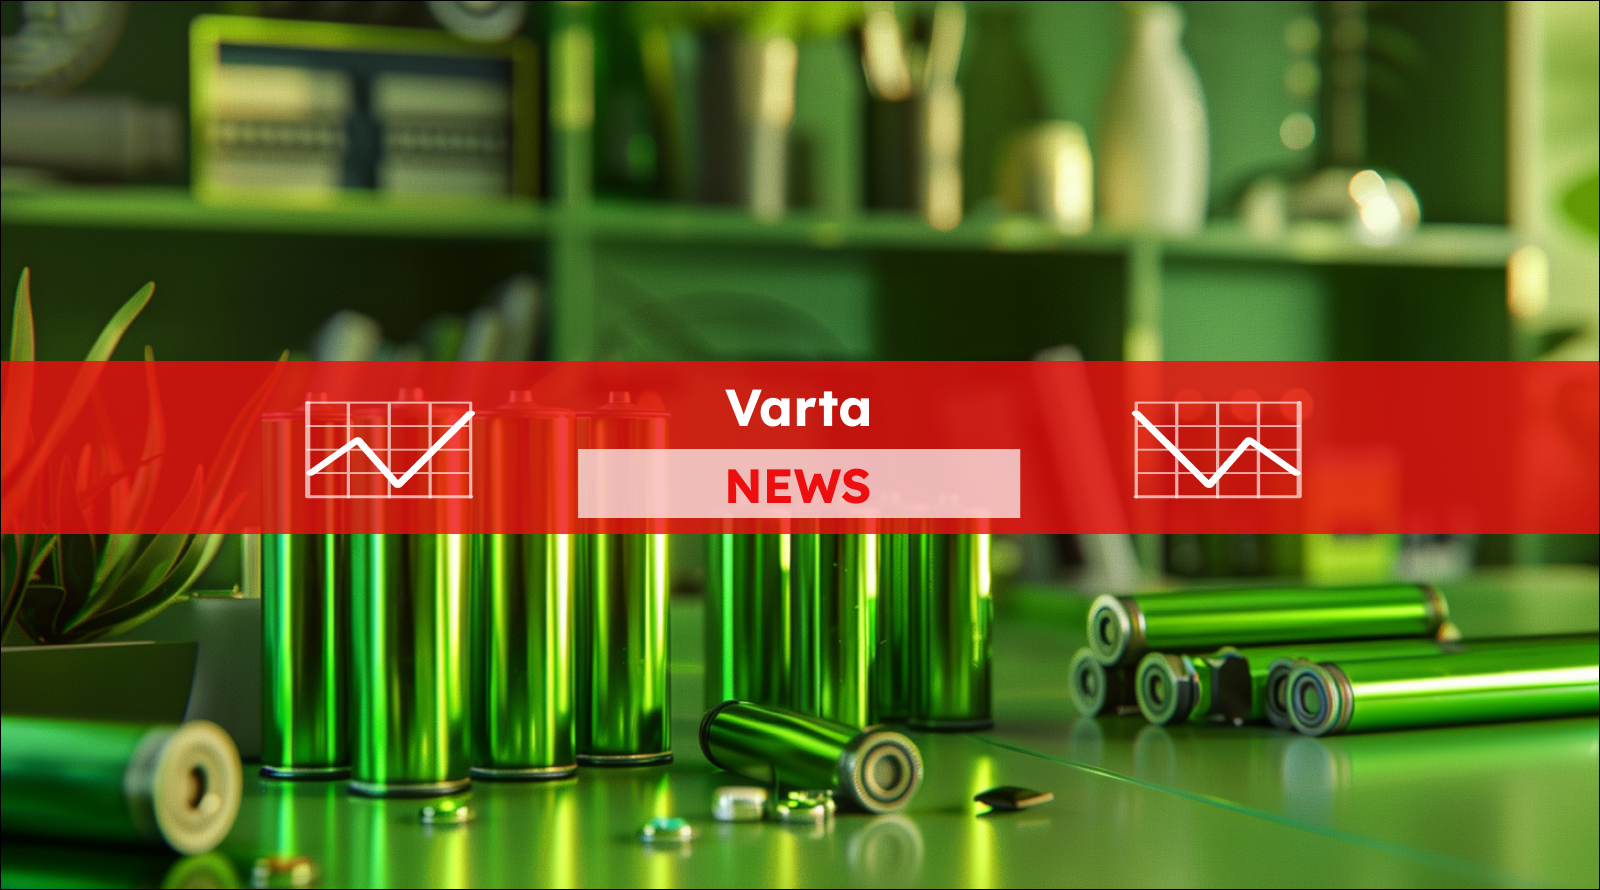 Eine Reihe von grünen Batterien verschiedener Größen auf dem Tisch, mit einem Varta NEWS Banner.